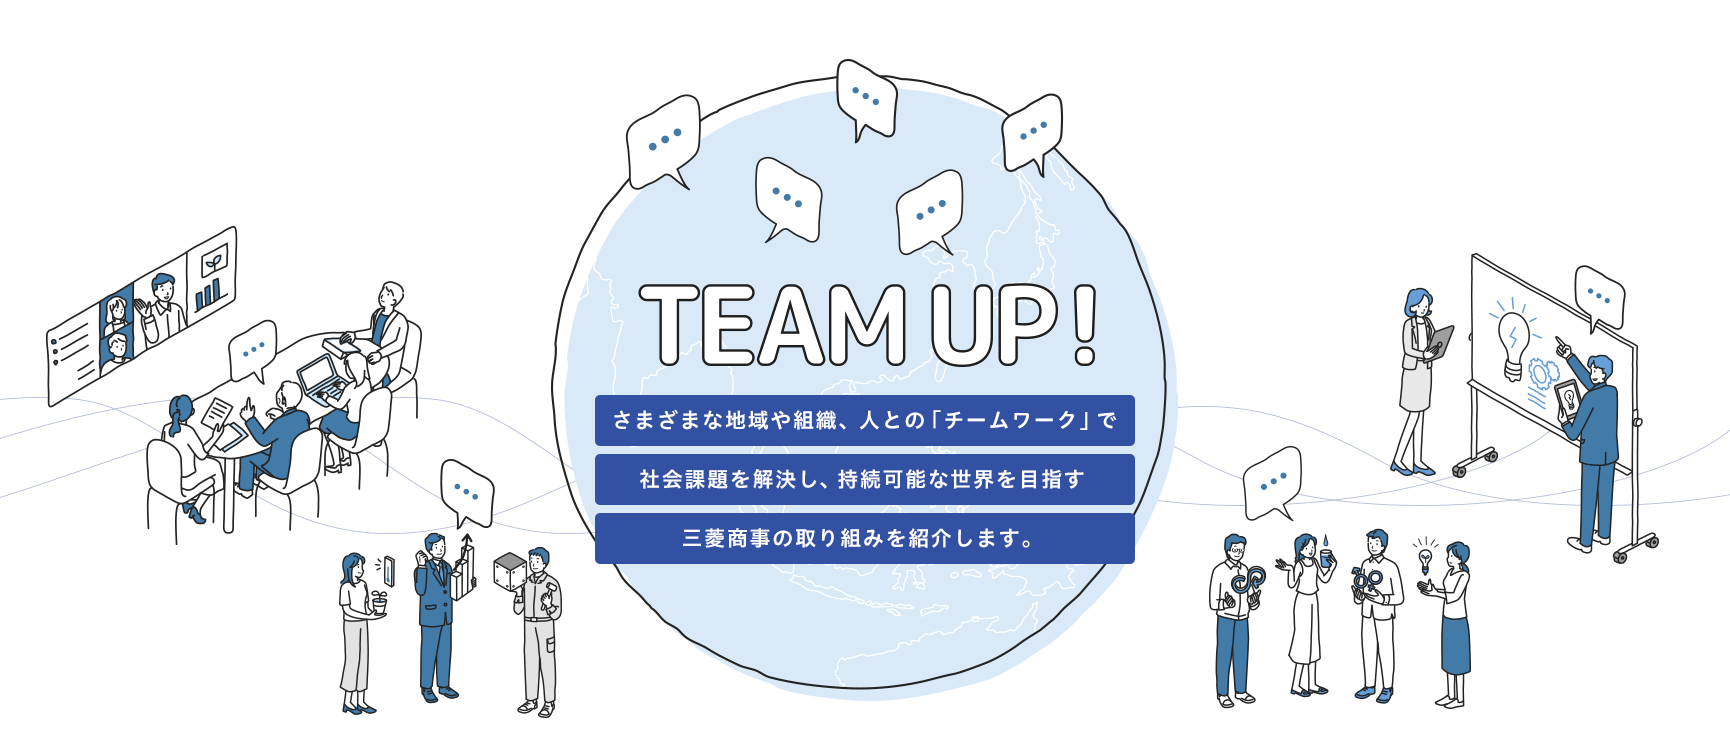 TEAM UP! 持続可能な世界を目指して、さまざまな地域や組織、人をつなげる三菱商事の「チームワーク」を紹介します。